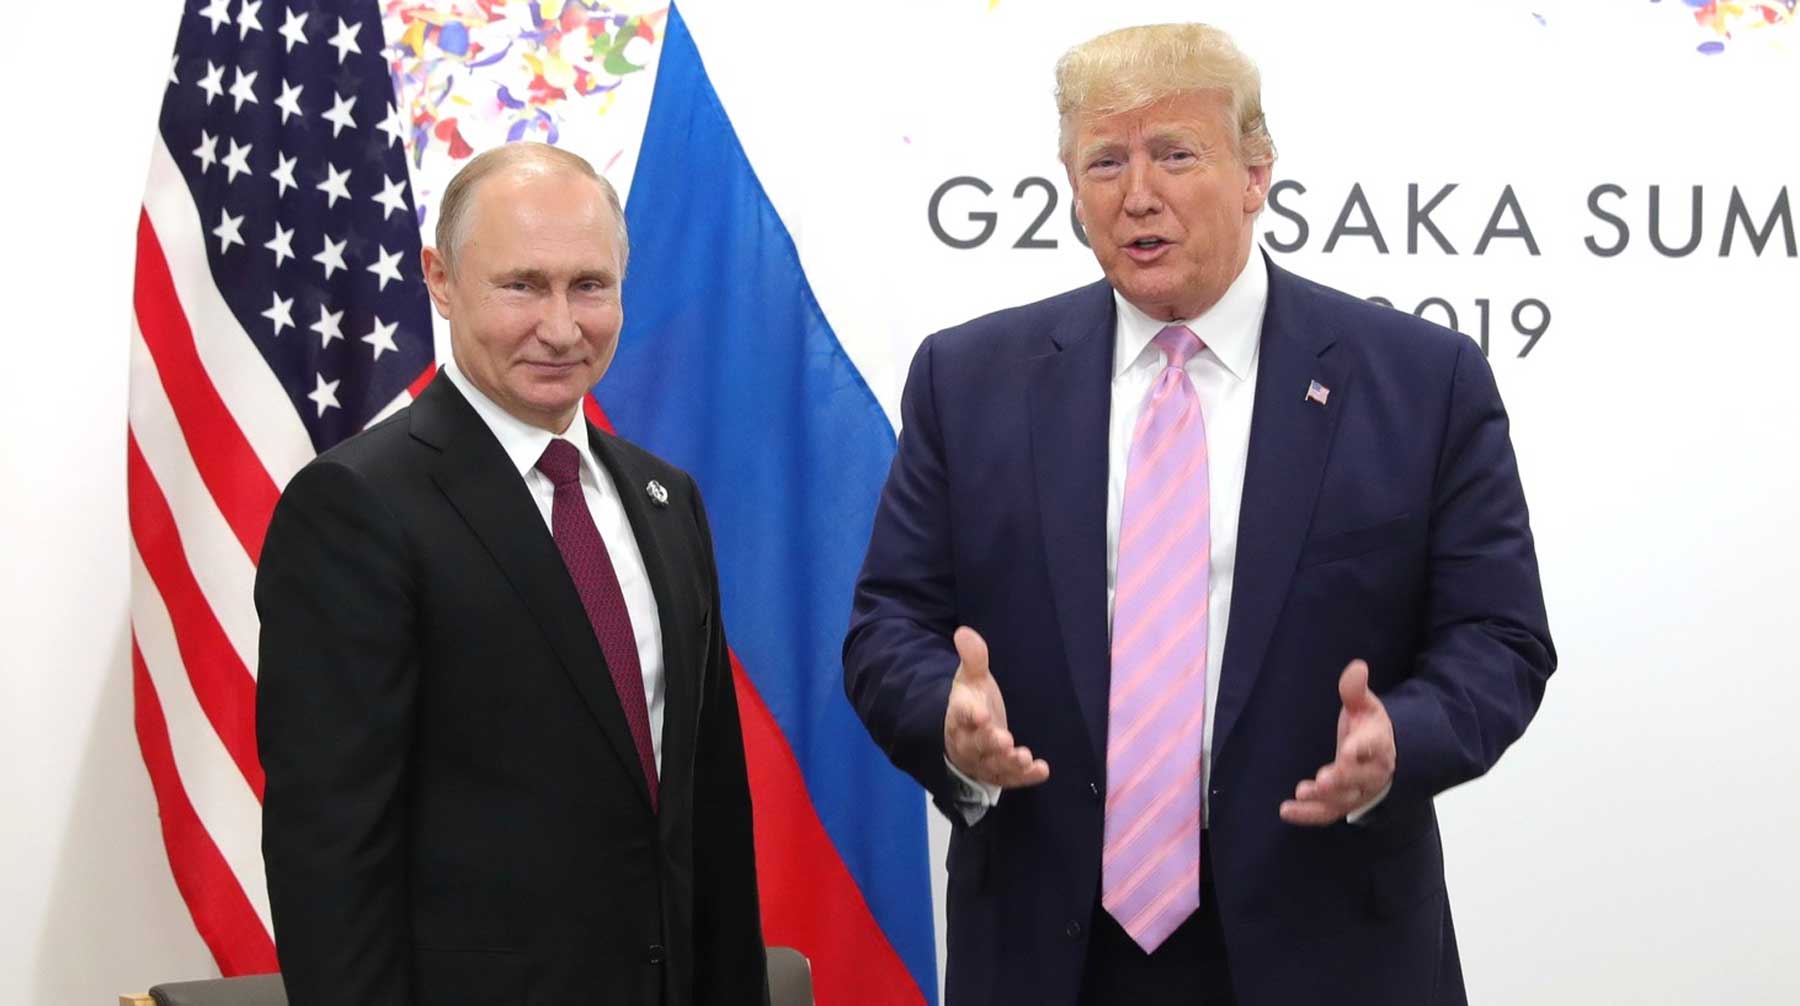 По пути лидеры России и США обменялись несколькими фразами Фото: © GLOBAL LOOK press / Kremlin Pool